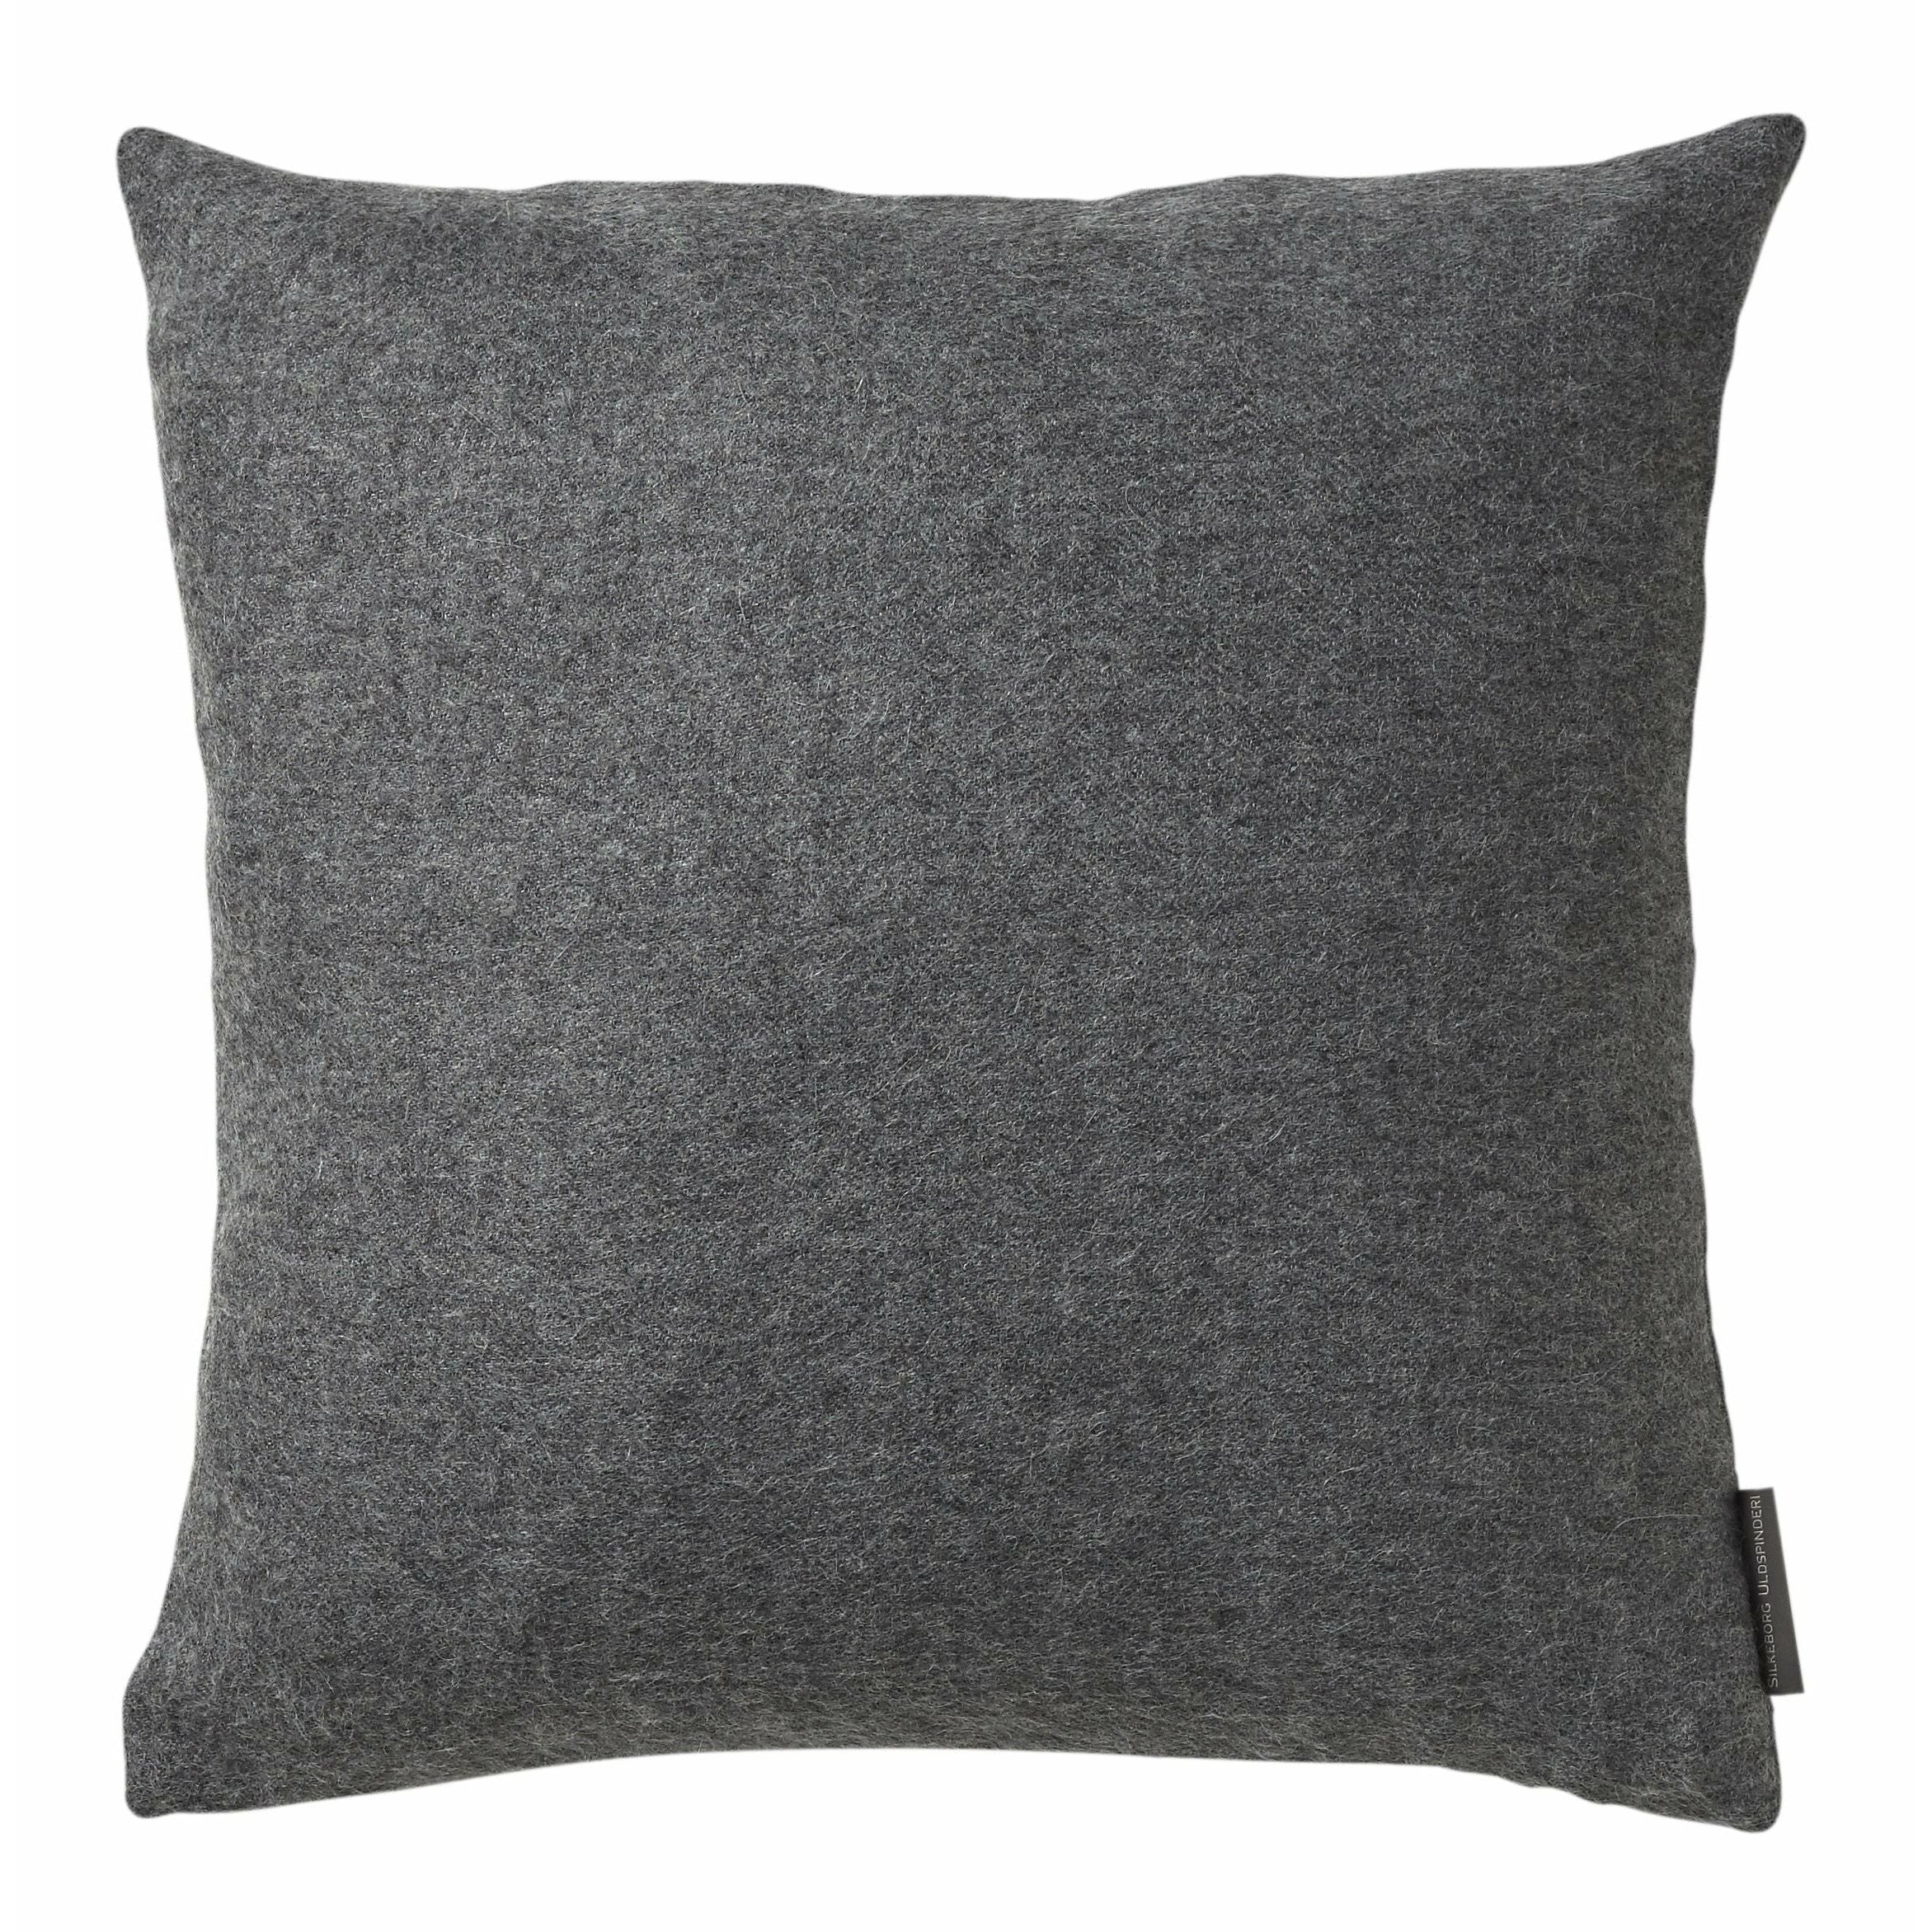 Silkorg Uldspinderi Arequipa Cushion 40 x40 cm, gris medio